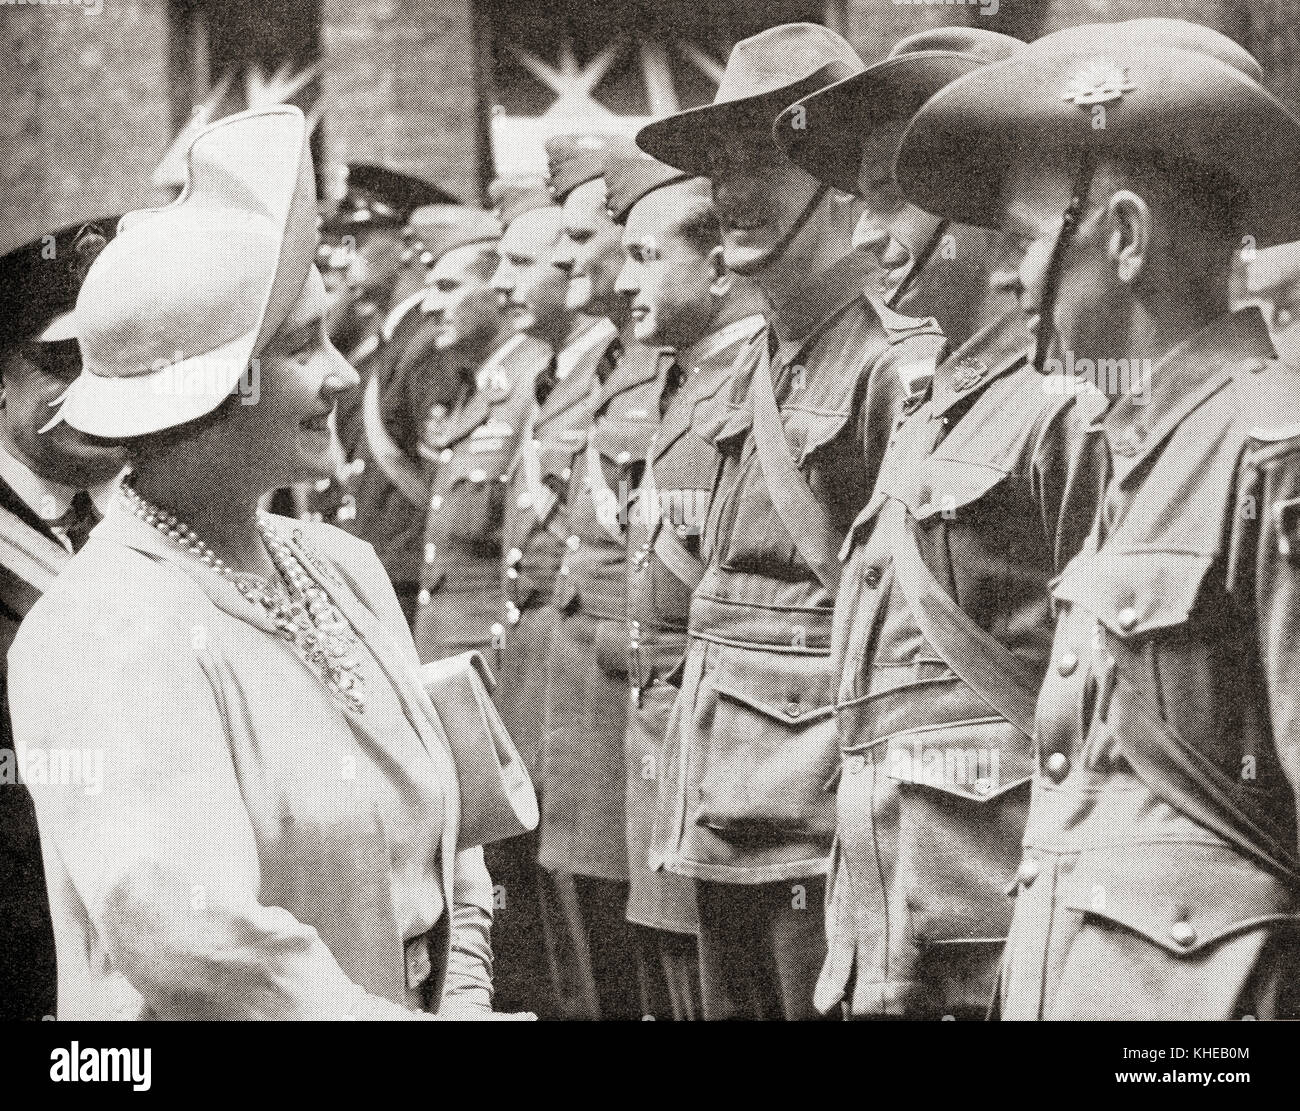 La reine Elizabeth greeting troupes australiennes en Grande-Bretagne en 1940, pendant la Seconde Guerre mondiale. La Reine Elizabeth, la Reine Mère. Elizabeth Angela Marguerite Bowes-Lyon, 1900 - 2002. Épouse du roi George VI et mère de la reine Elizabeth II. Banque D'Images